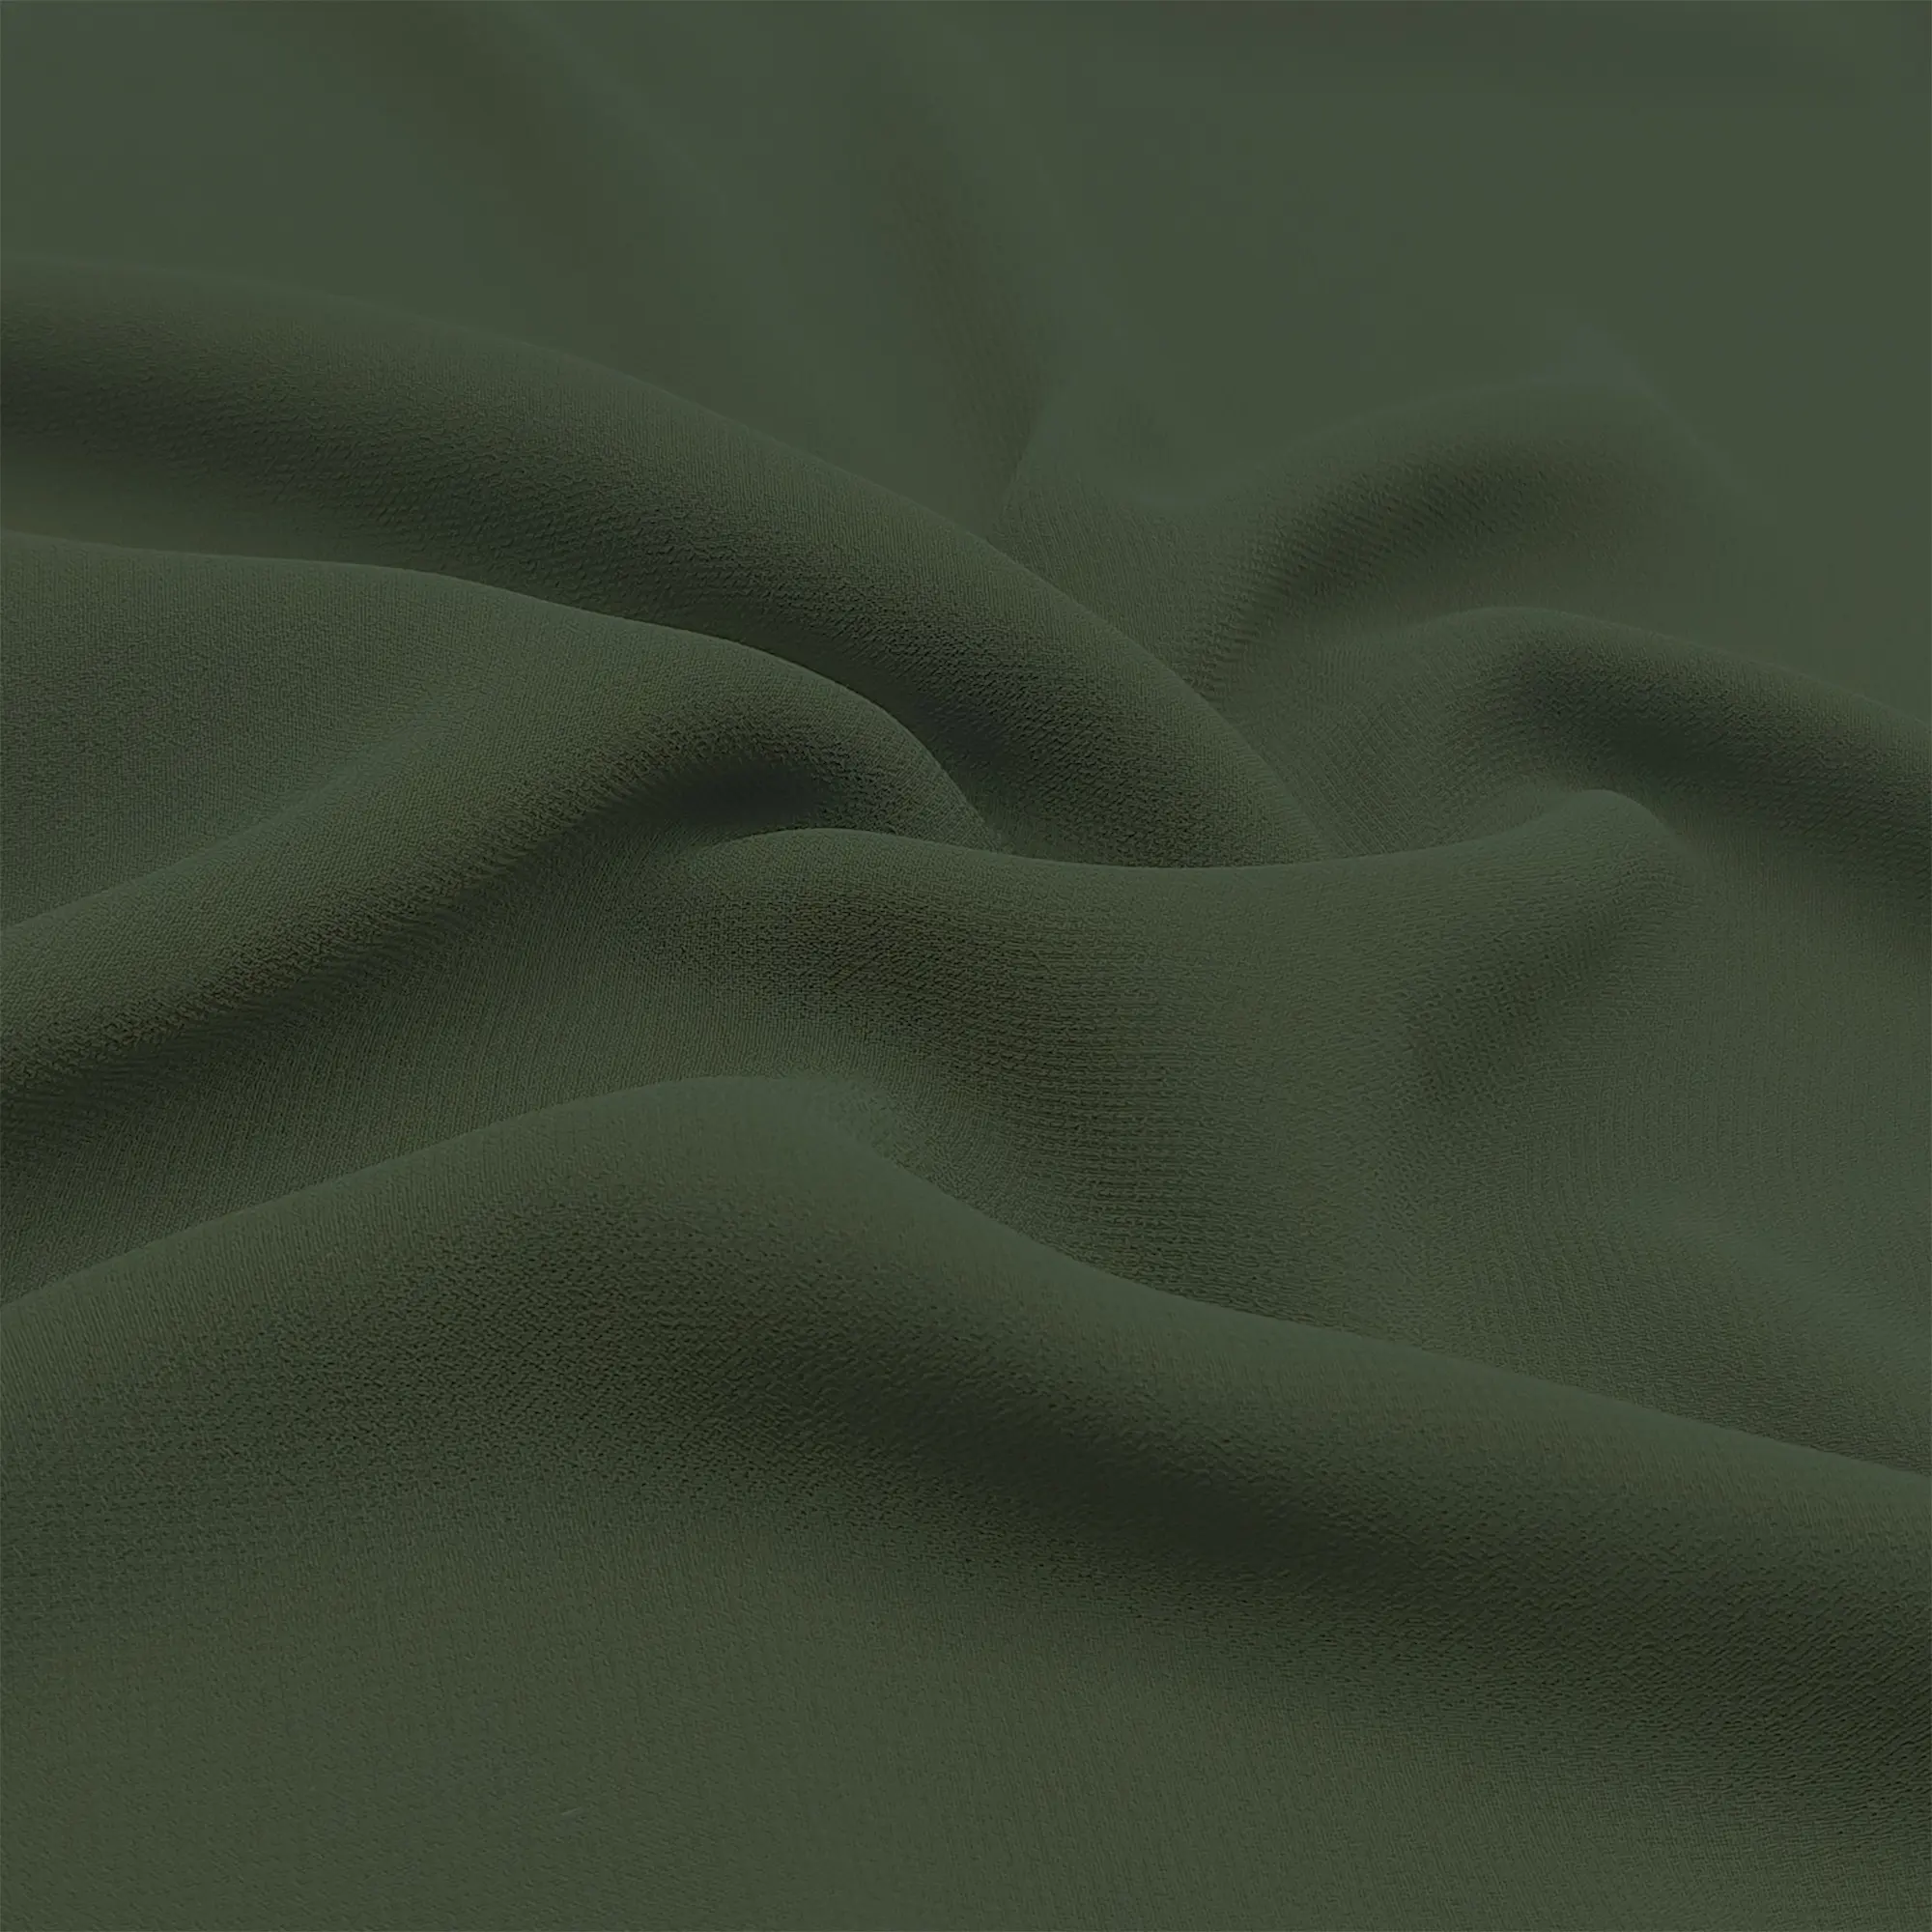 75D kırışık kumaş mayo kireç yeşil kadın kumaş krep şifon polyester vual eşarp kumaşı